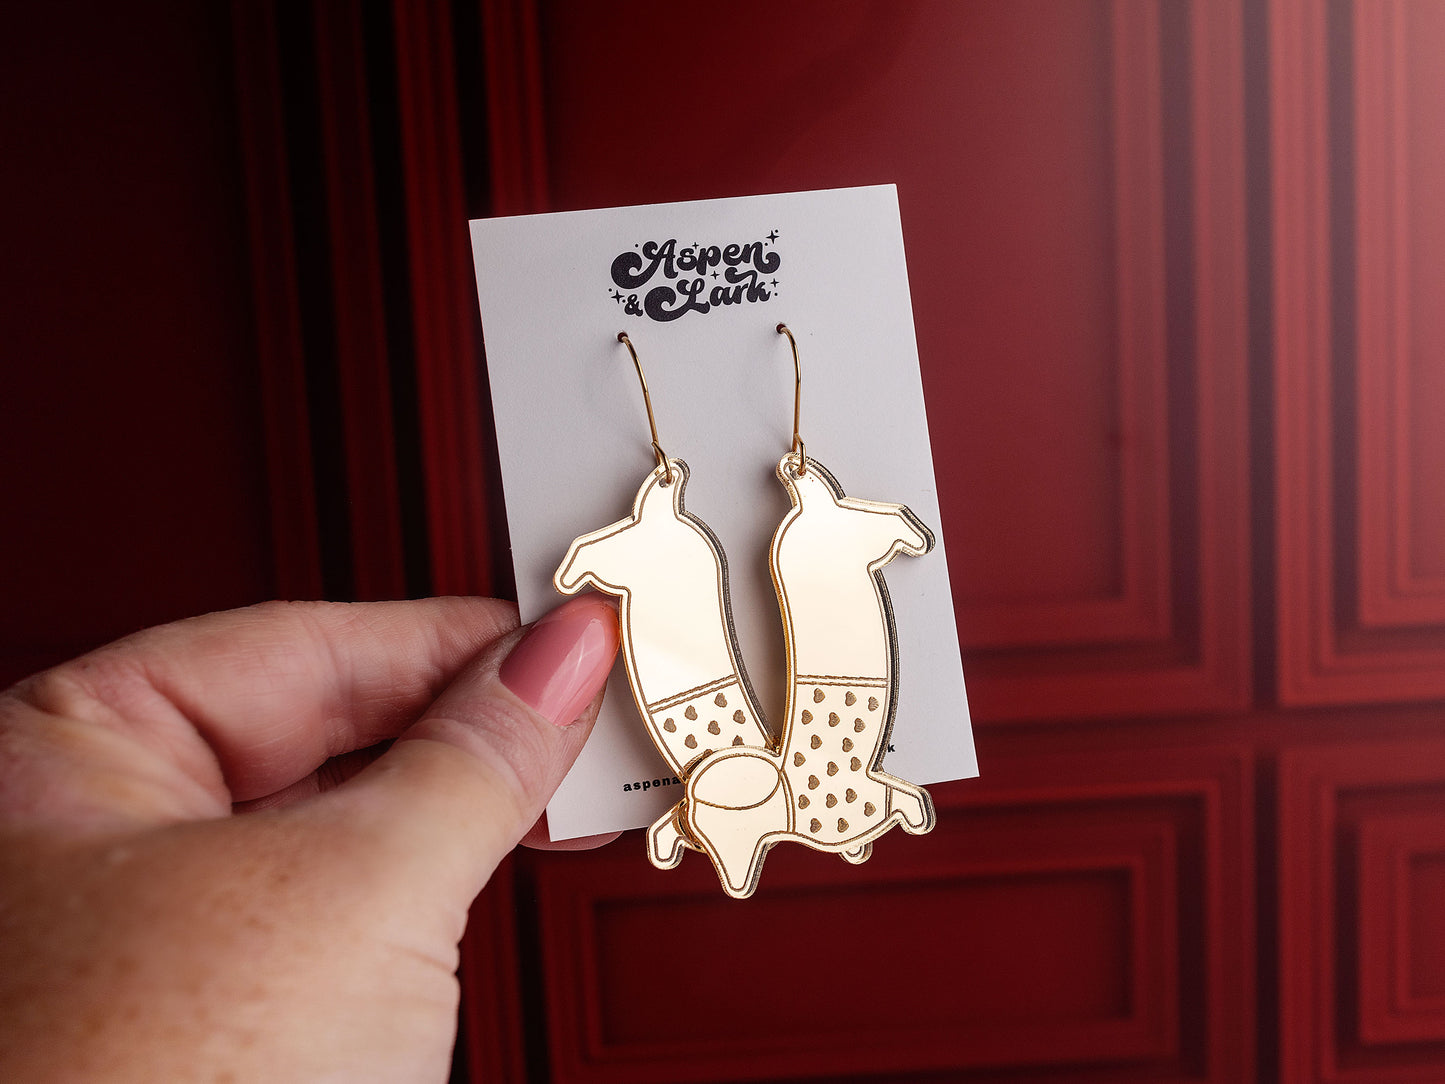 Weiner Dog Earrings - Valentine Earrings - Dog Earrings - Mirror Acrylic Earrings - Gold